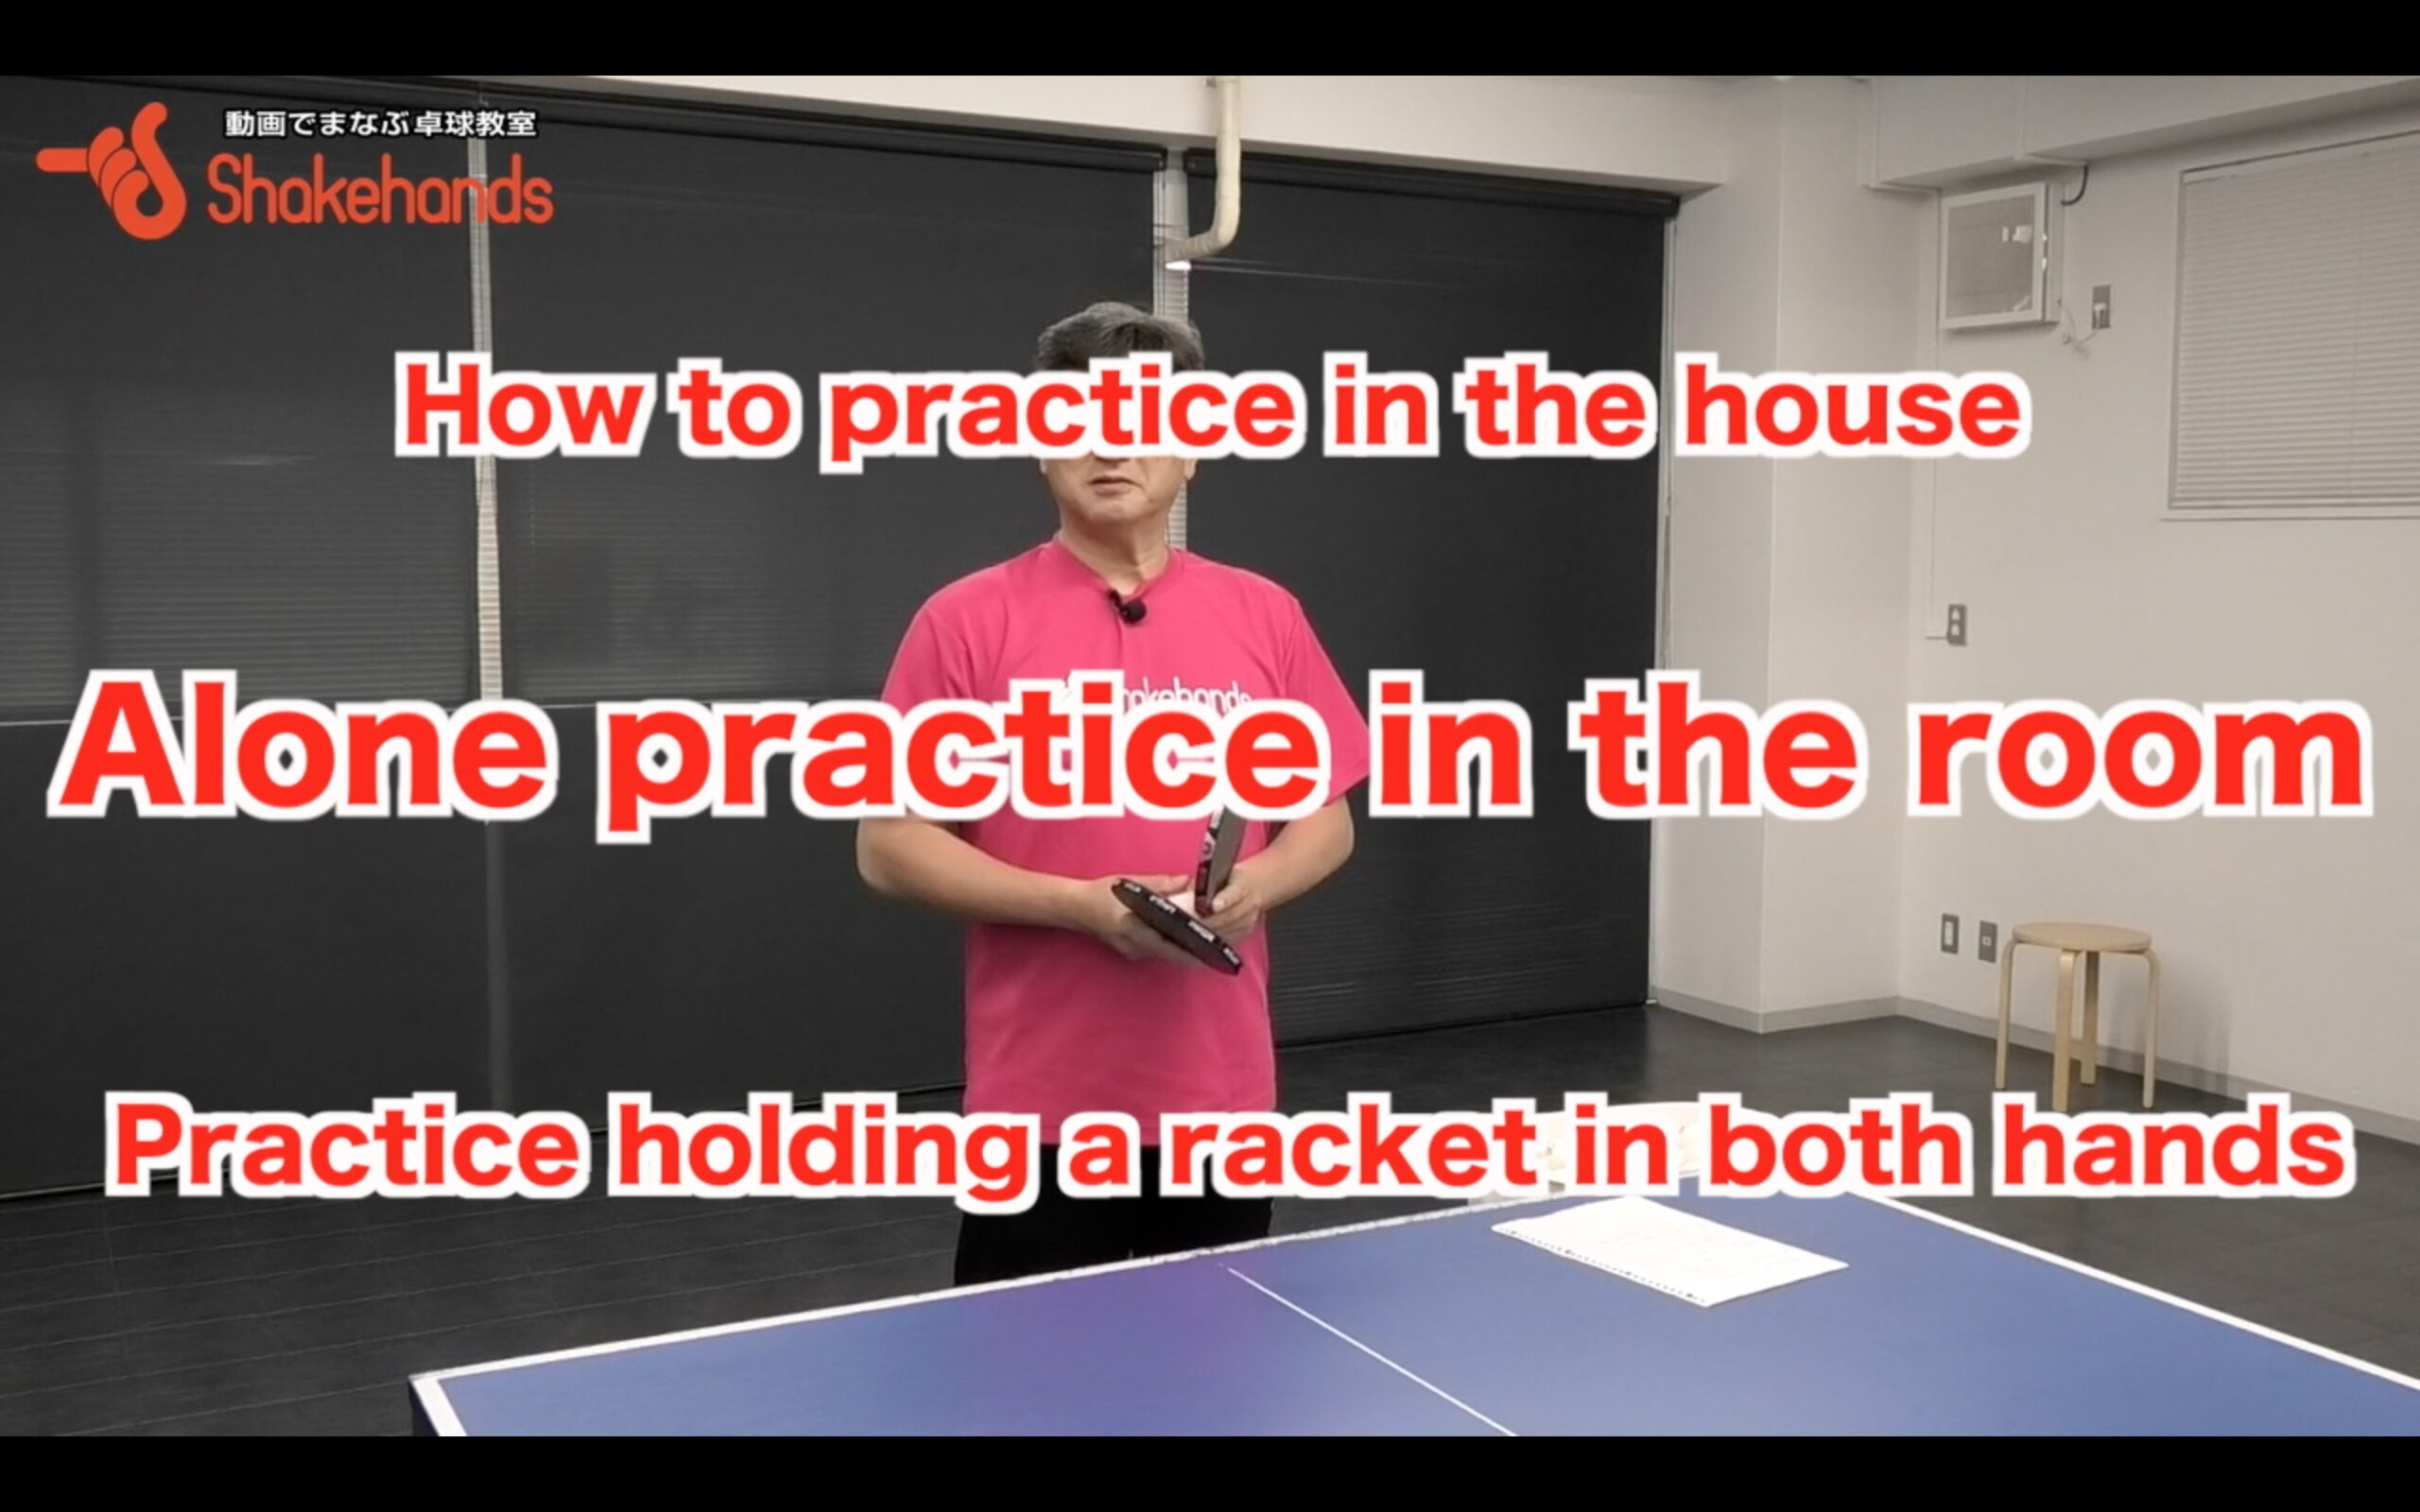 Practice holding racket in both hands